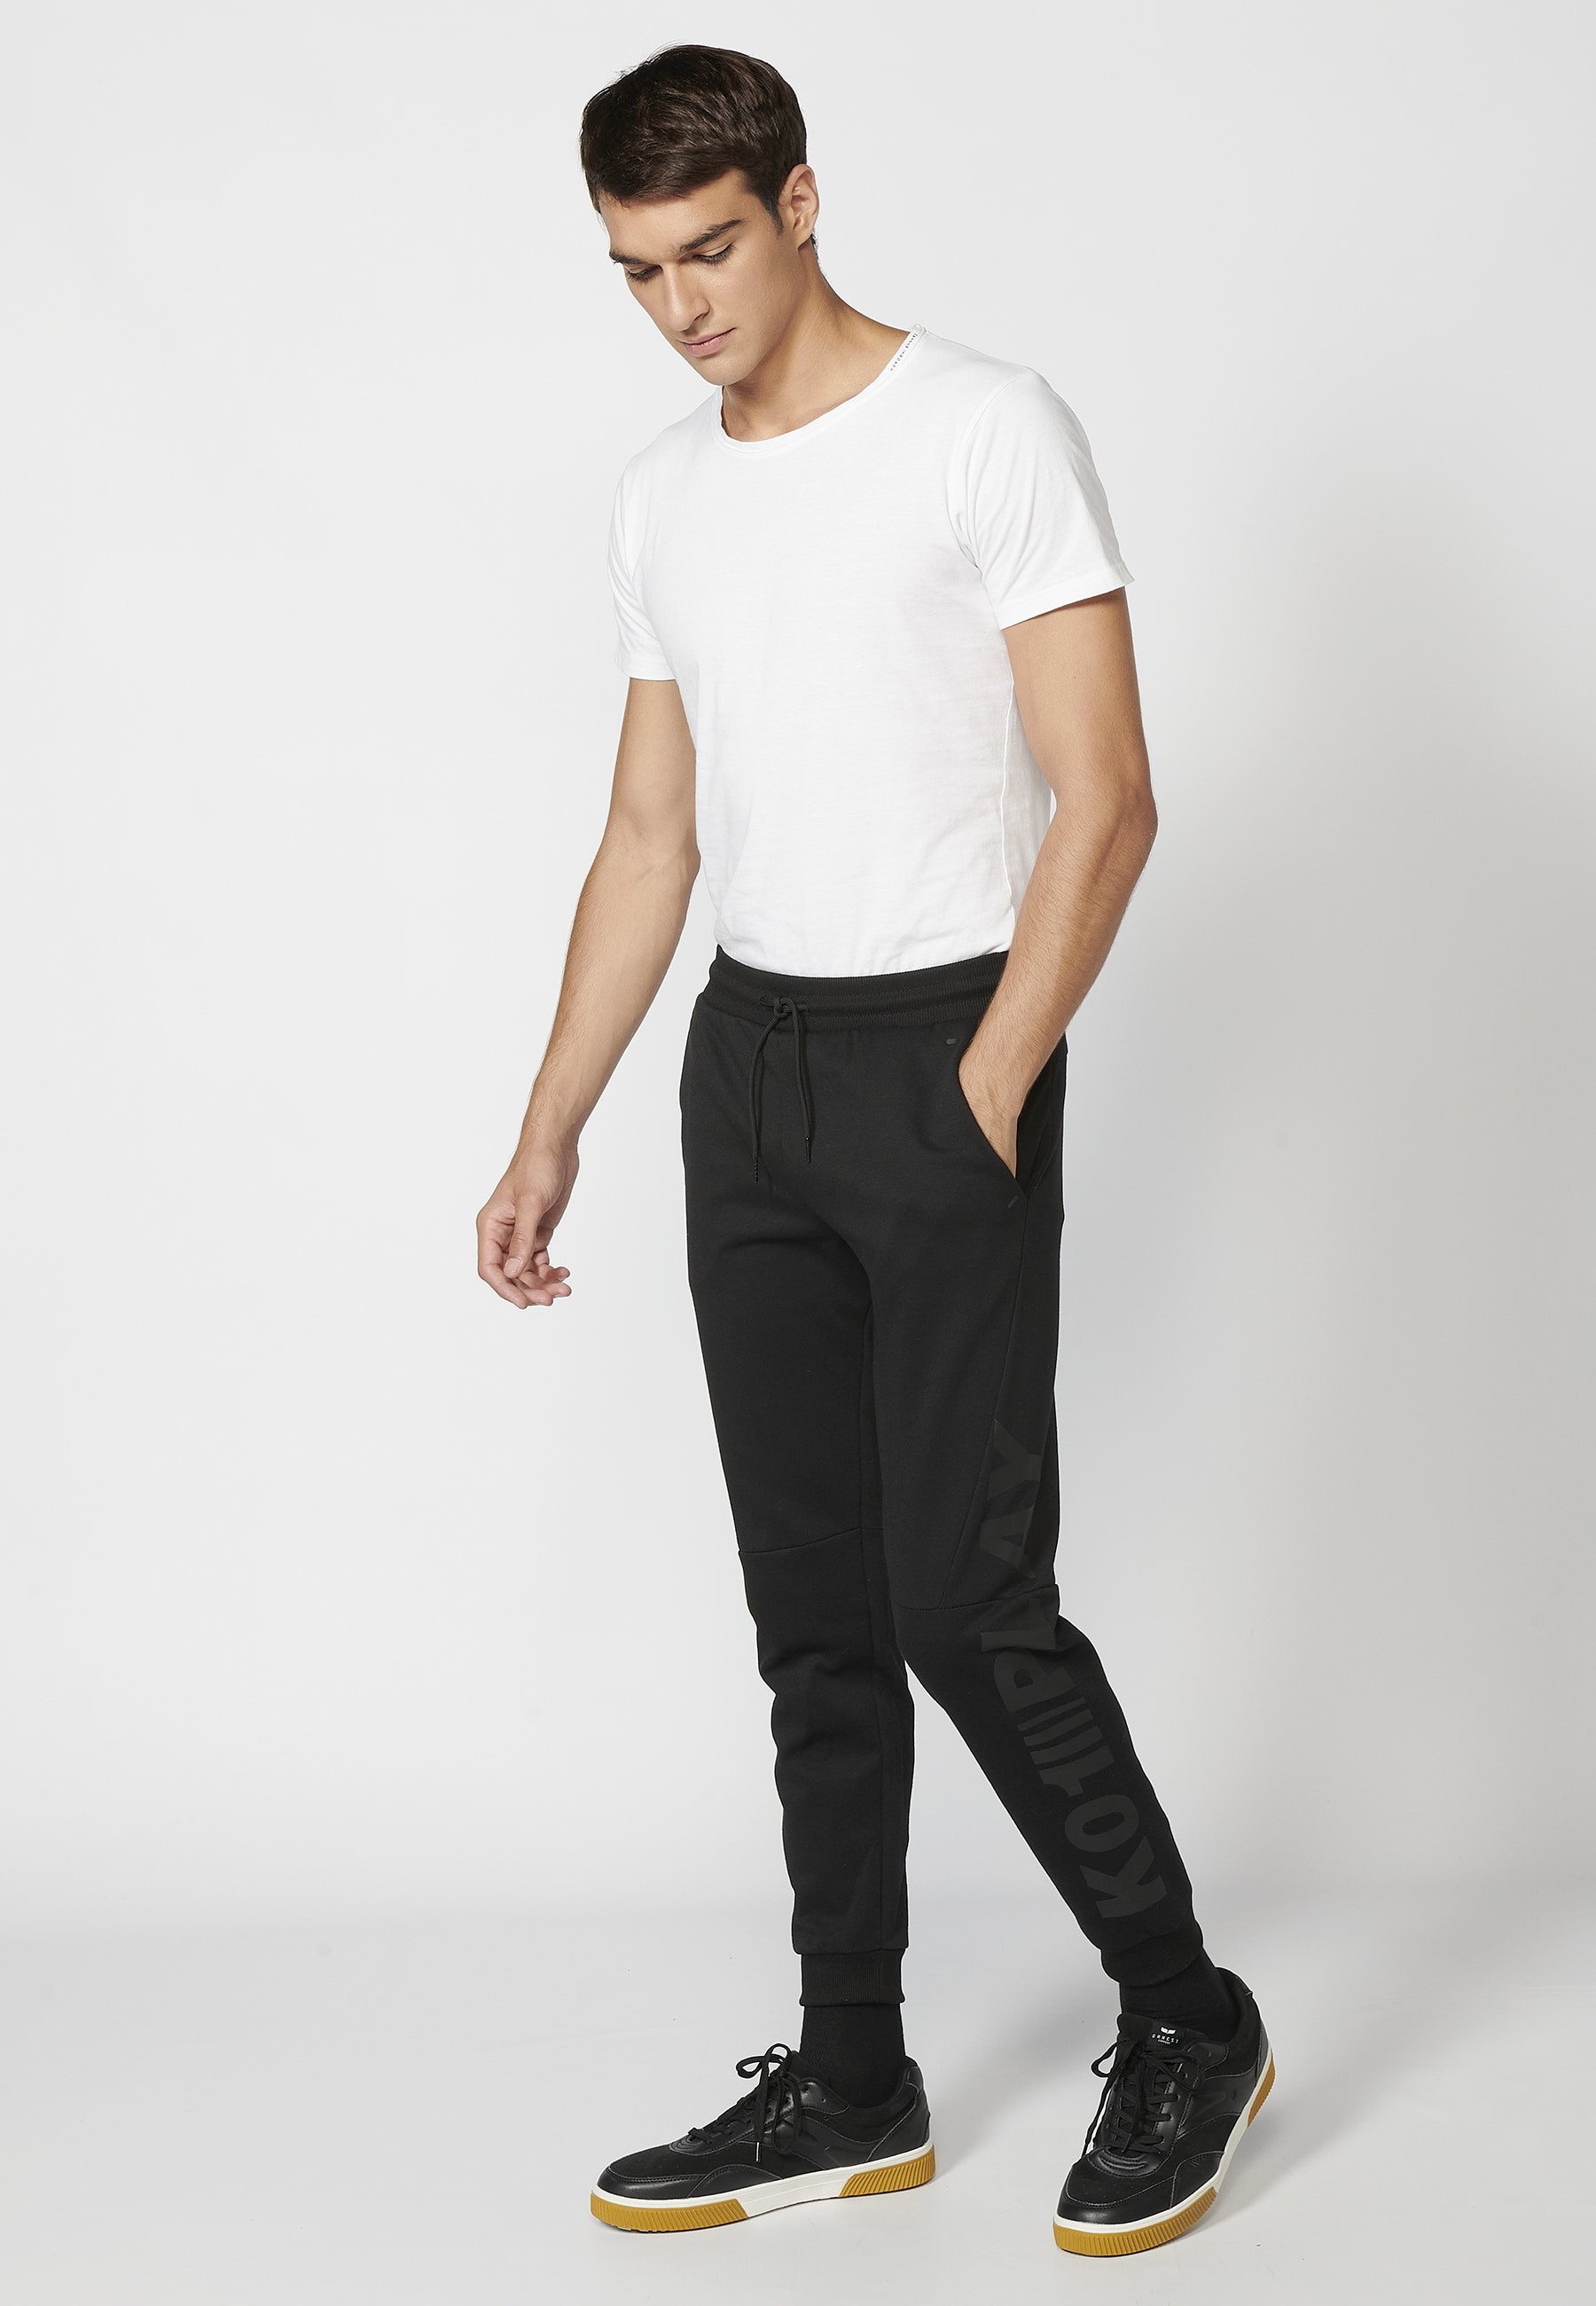 Pantalón Deportivo largo jogger con cintura elástica ajustable, detalle en bolsillo, color Negro para Hombre